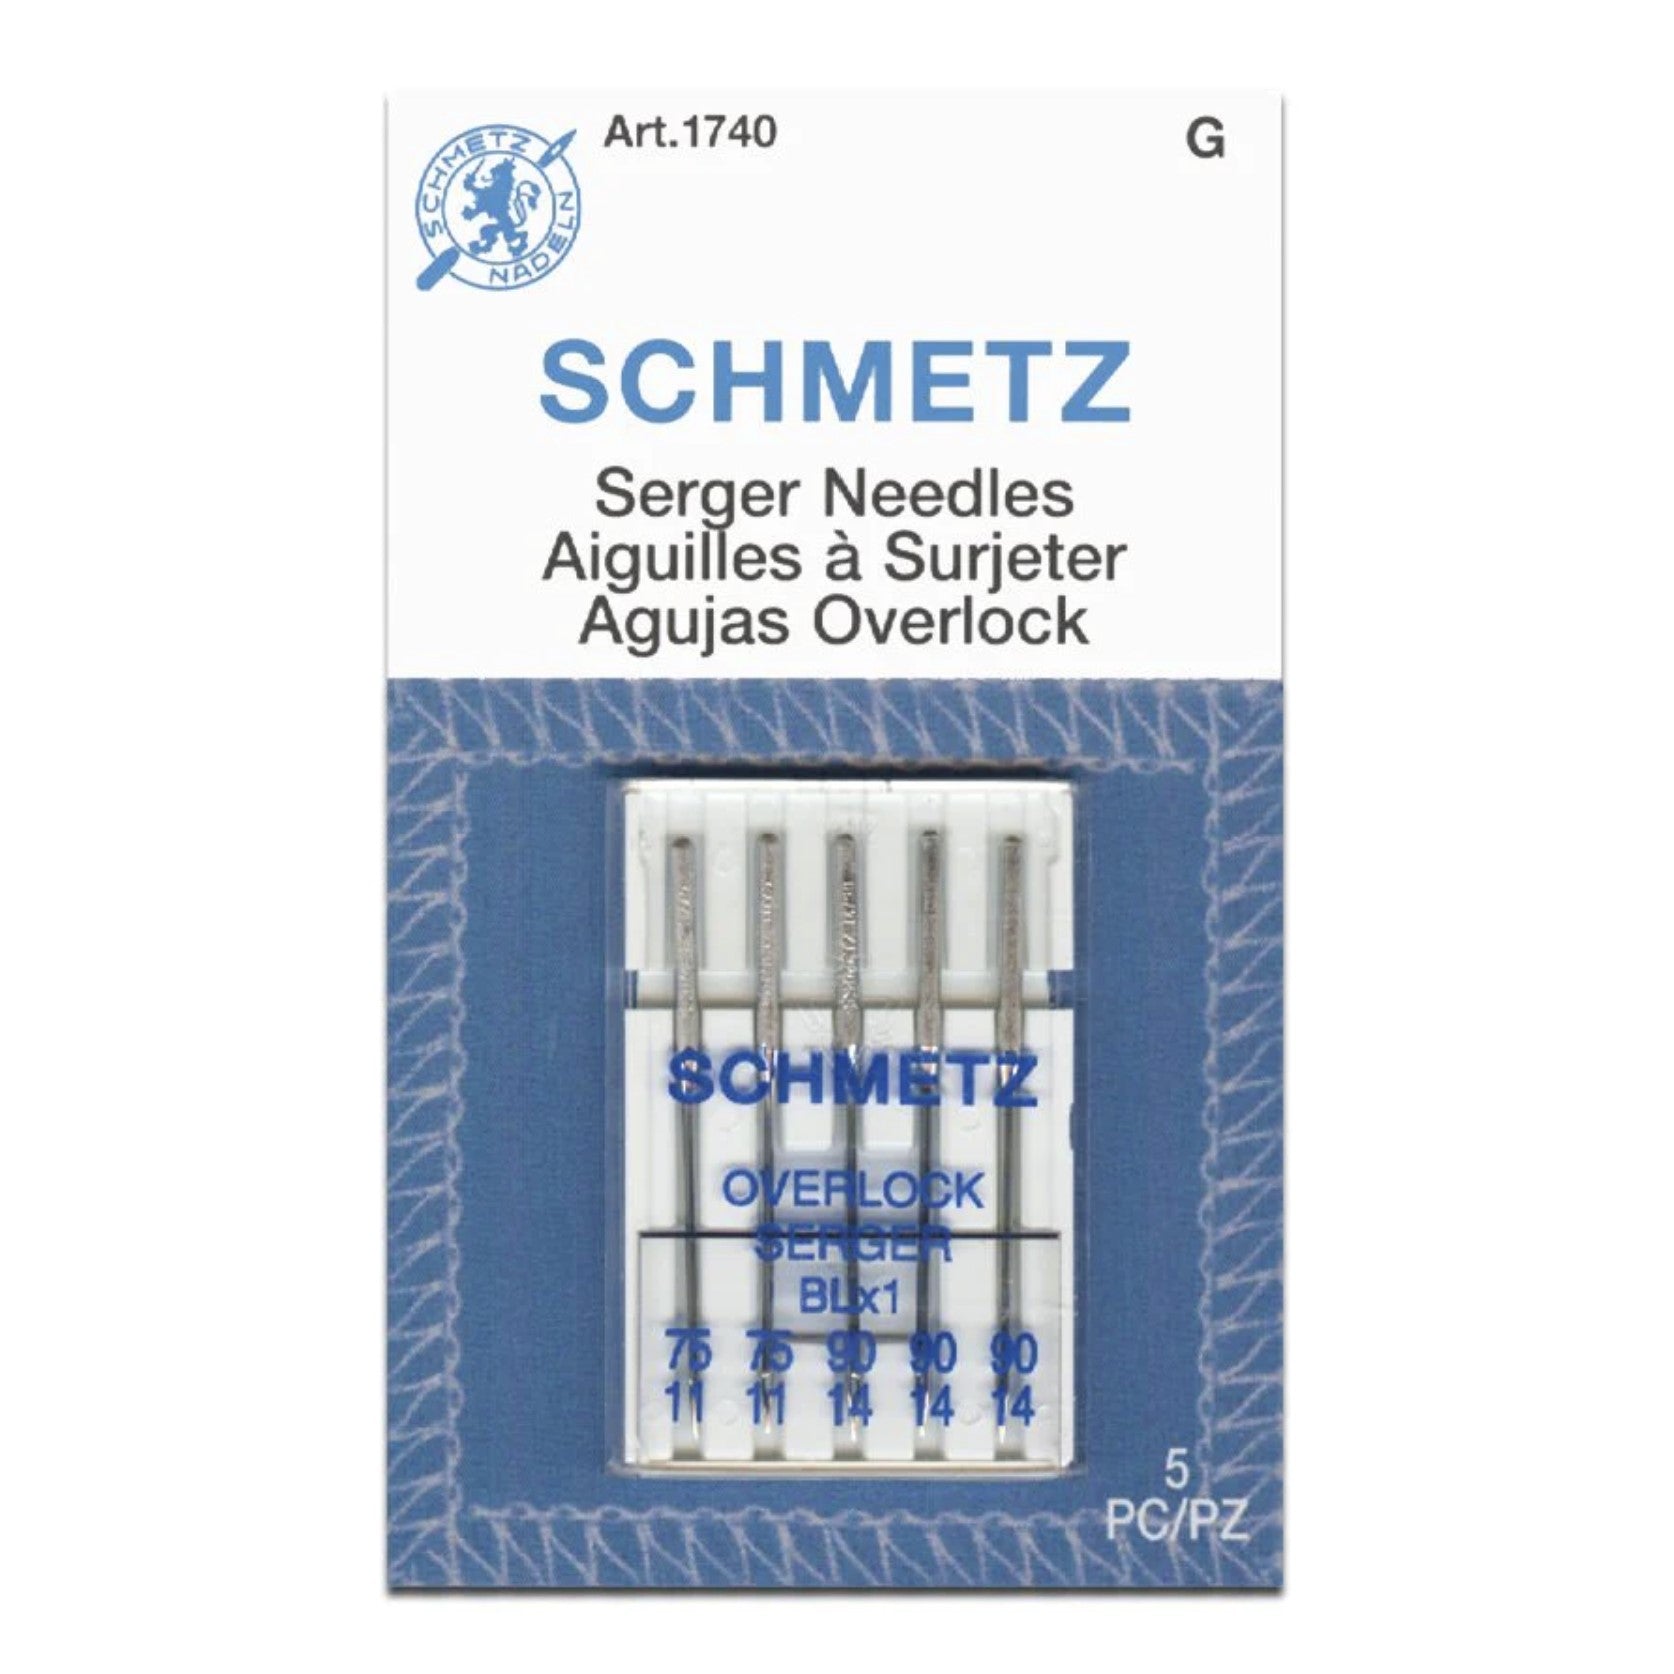 Serger / Overlock -- Machine Needles (BLx1), Assorted Sizes by Schmetz®